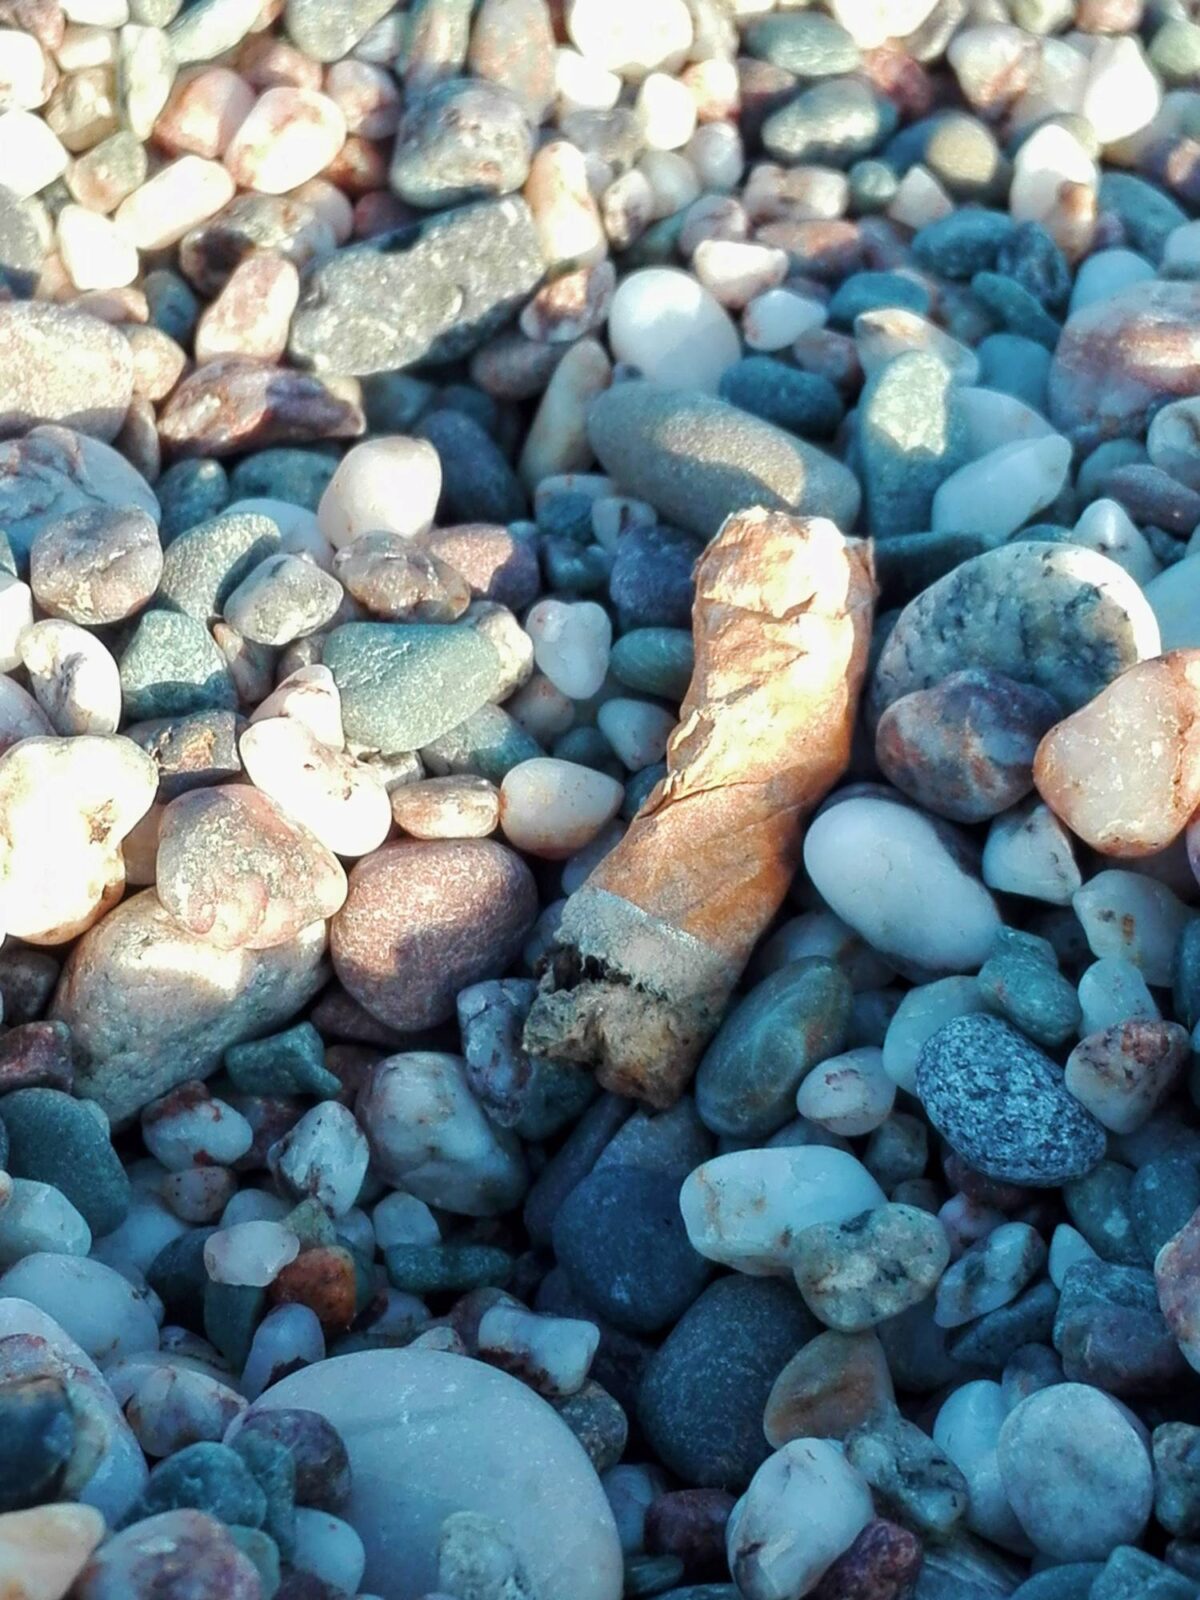 Un mozzicone di sigaretta cerca di mimetizzarsi in mezzo ad una graniglia di sassi estremamente variegata.